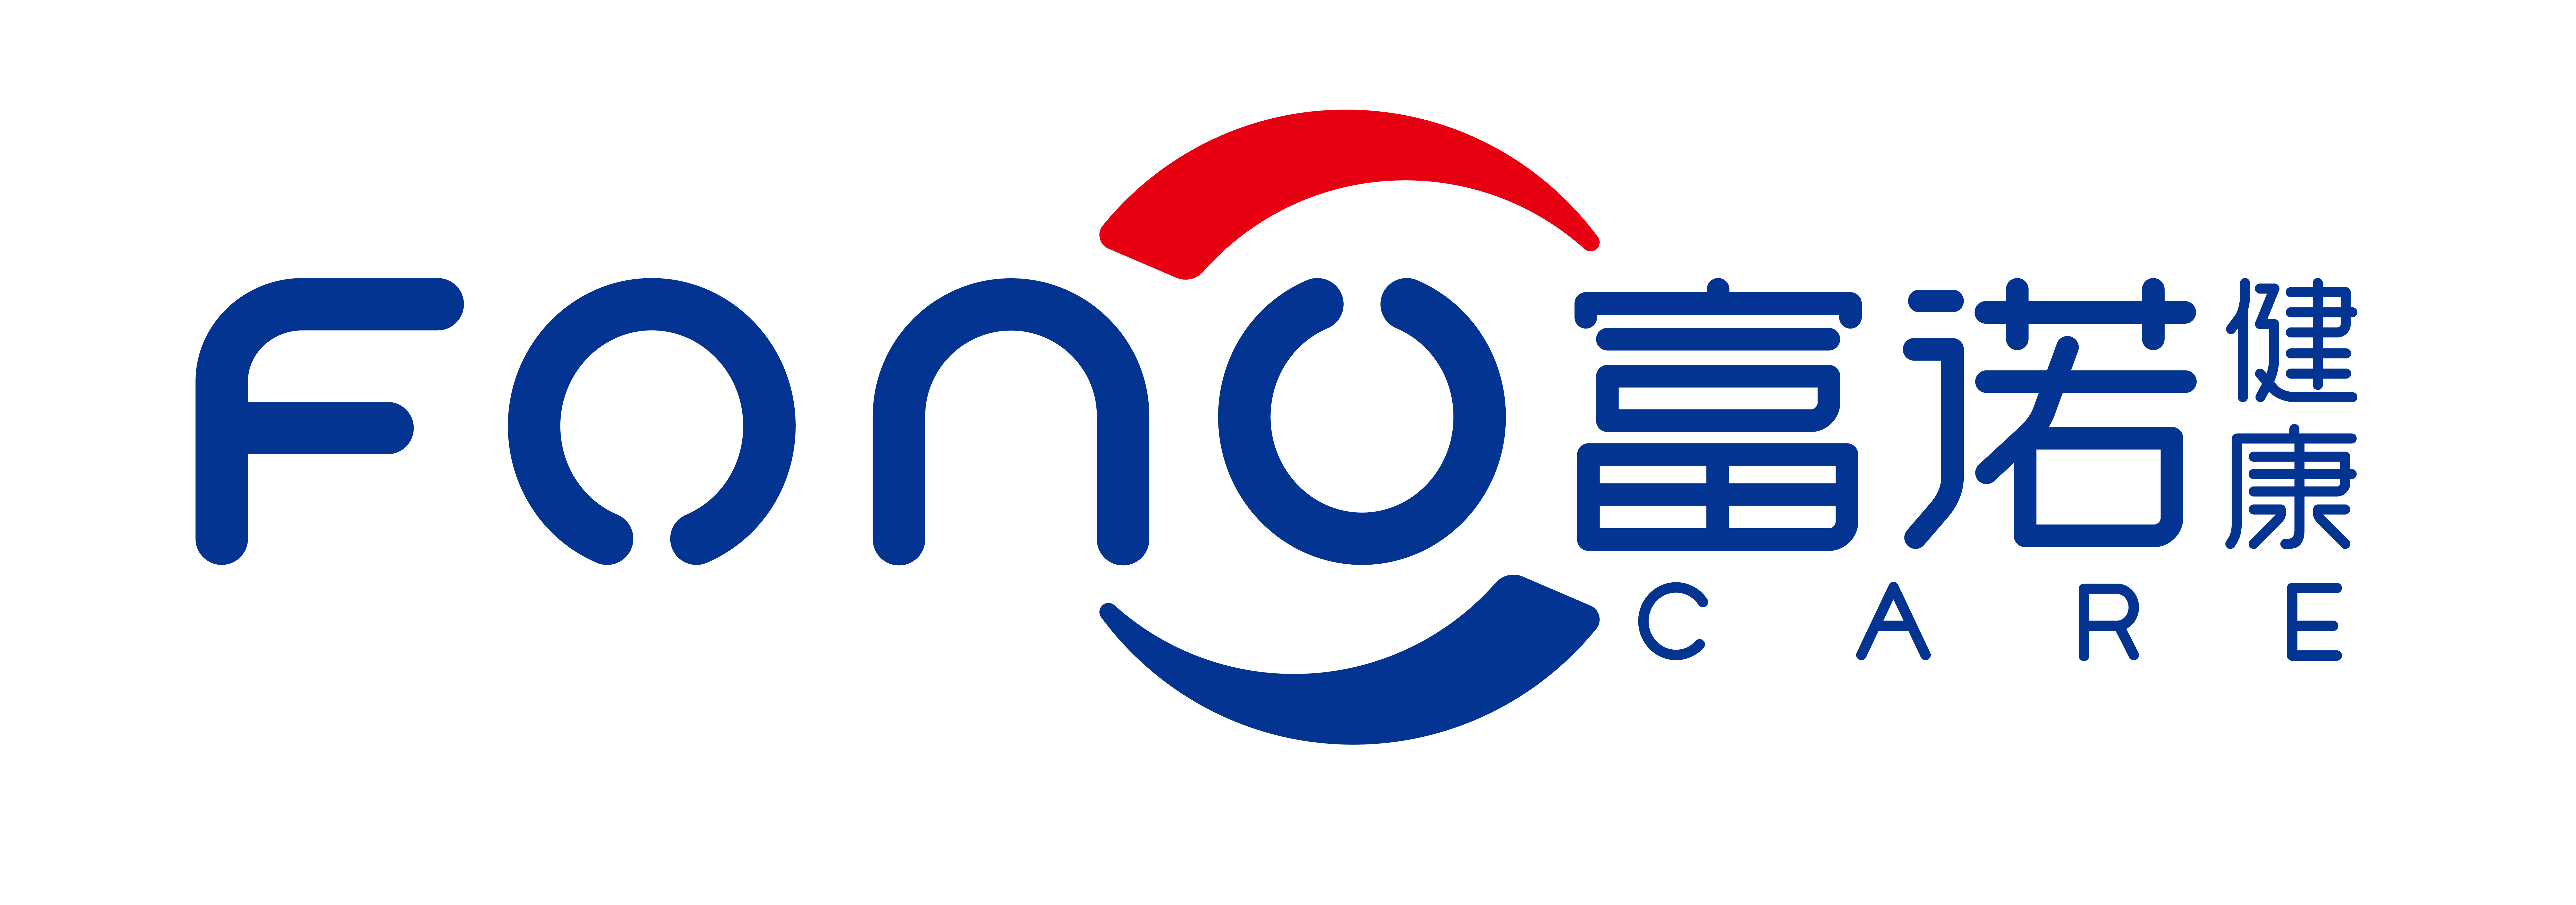 富诺新logo(确认版)-01.png